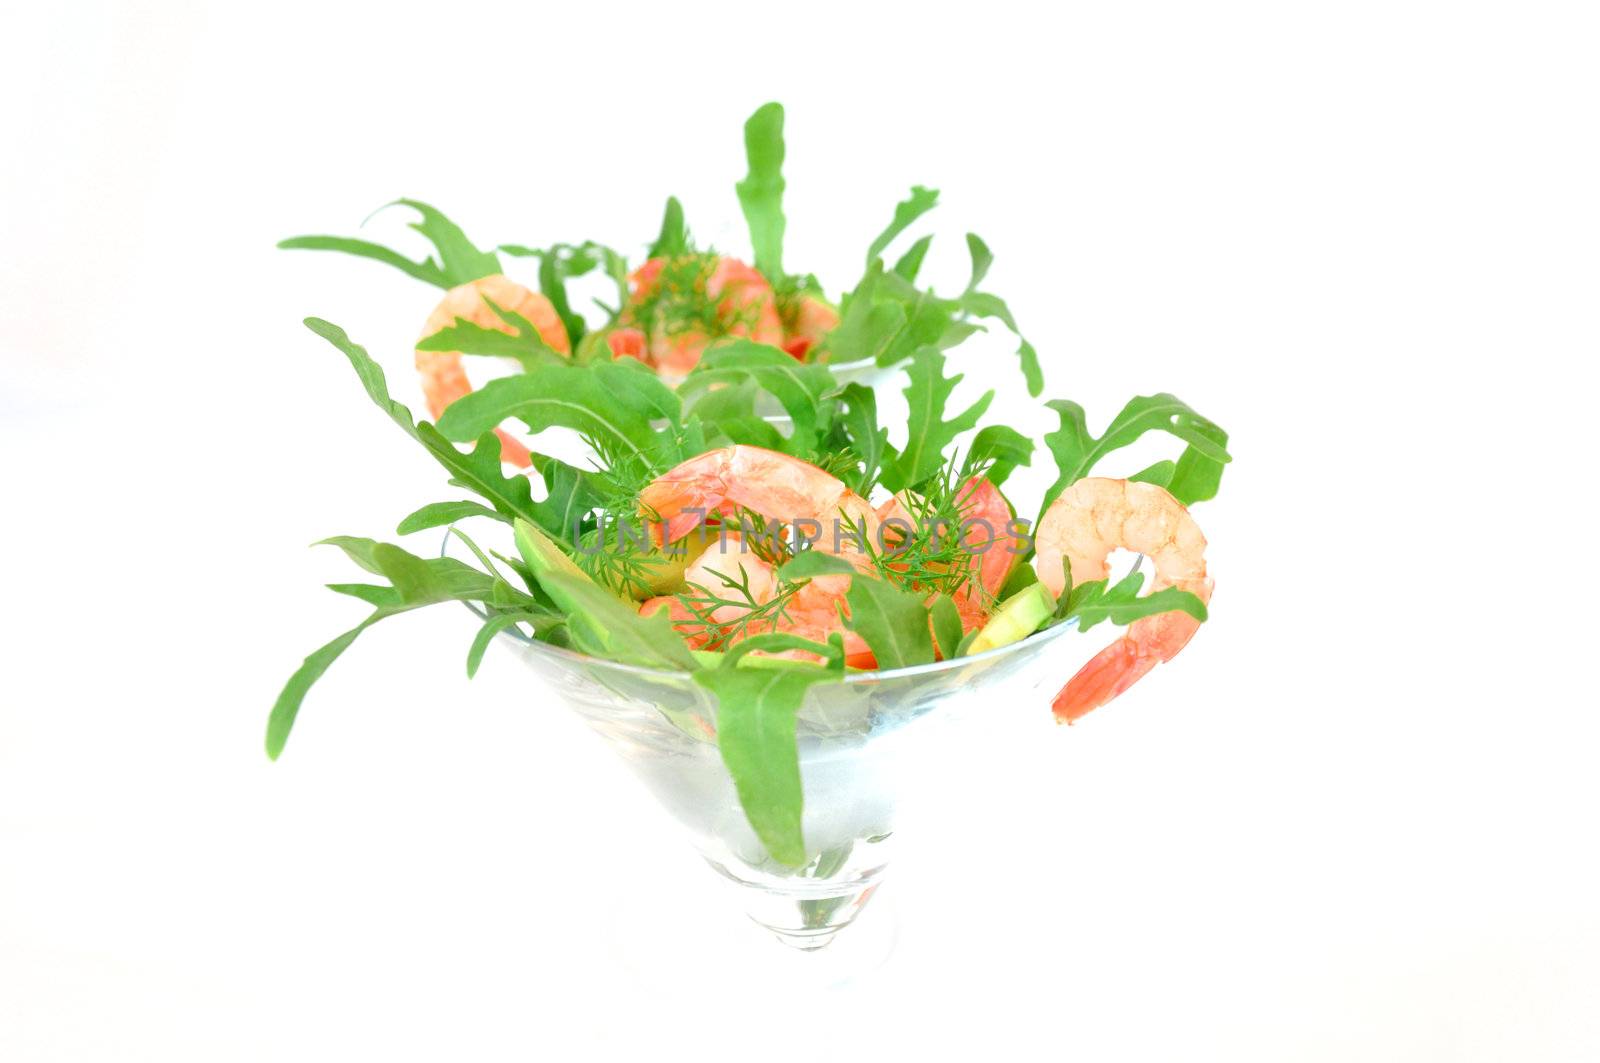 Shrimp in a glass with avocado and arugula close